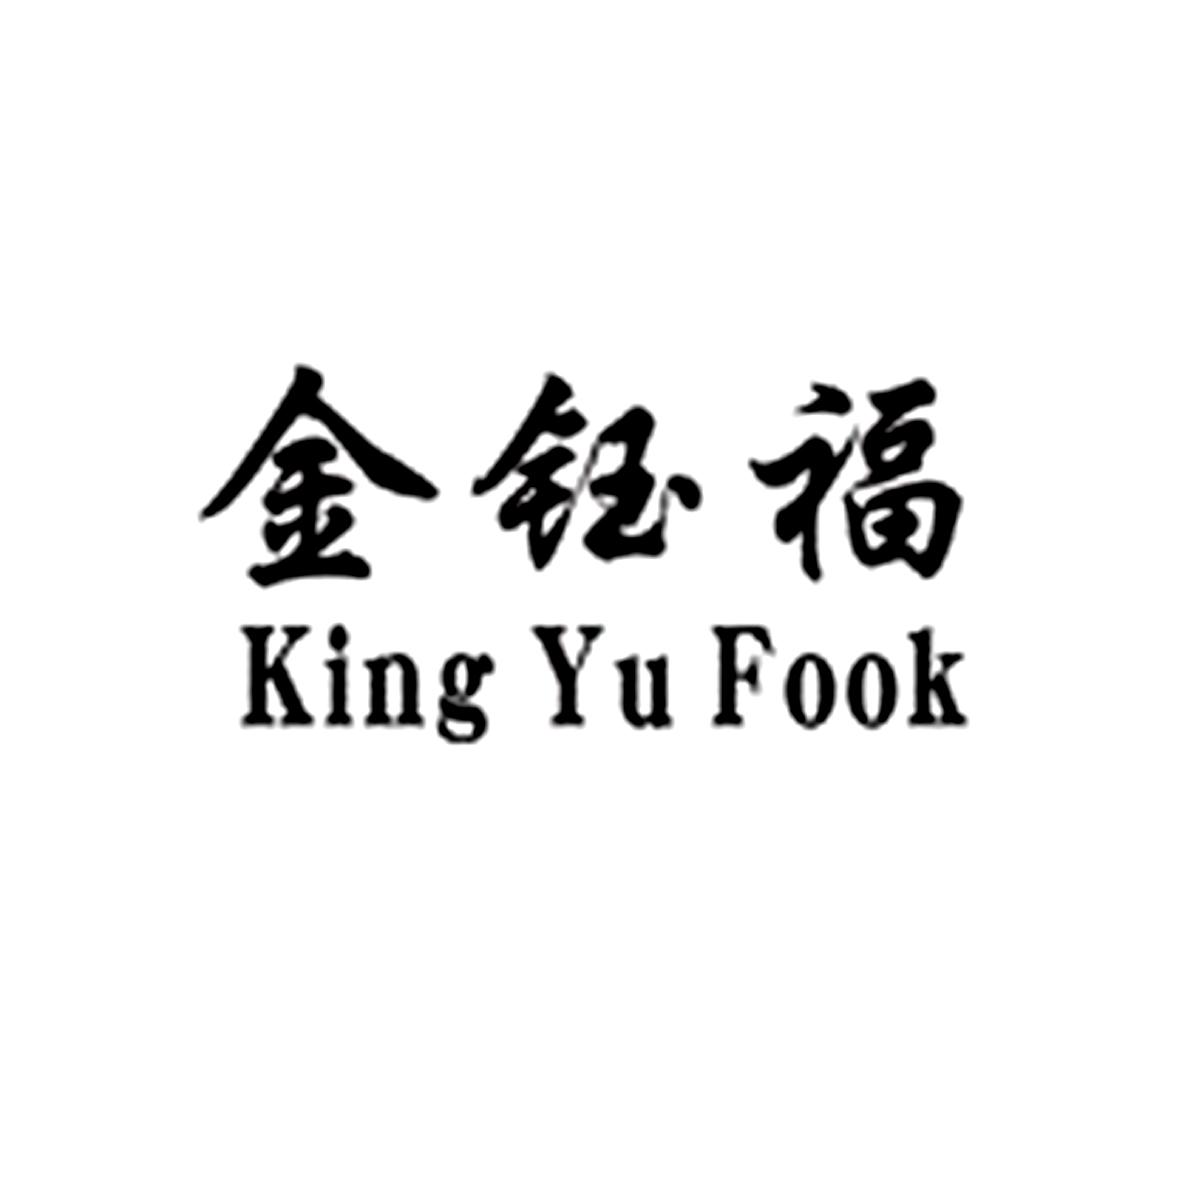 金钰福 king yu fook 商标公告